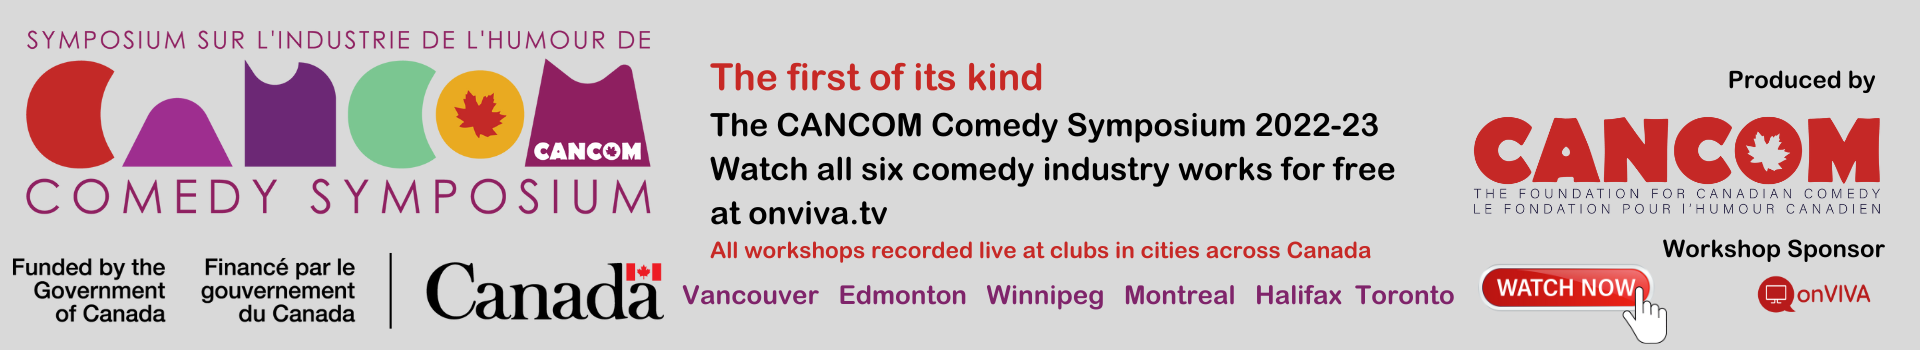 CANCOM Comedy Symposium 2022-23 Banner 350 Link